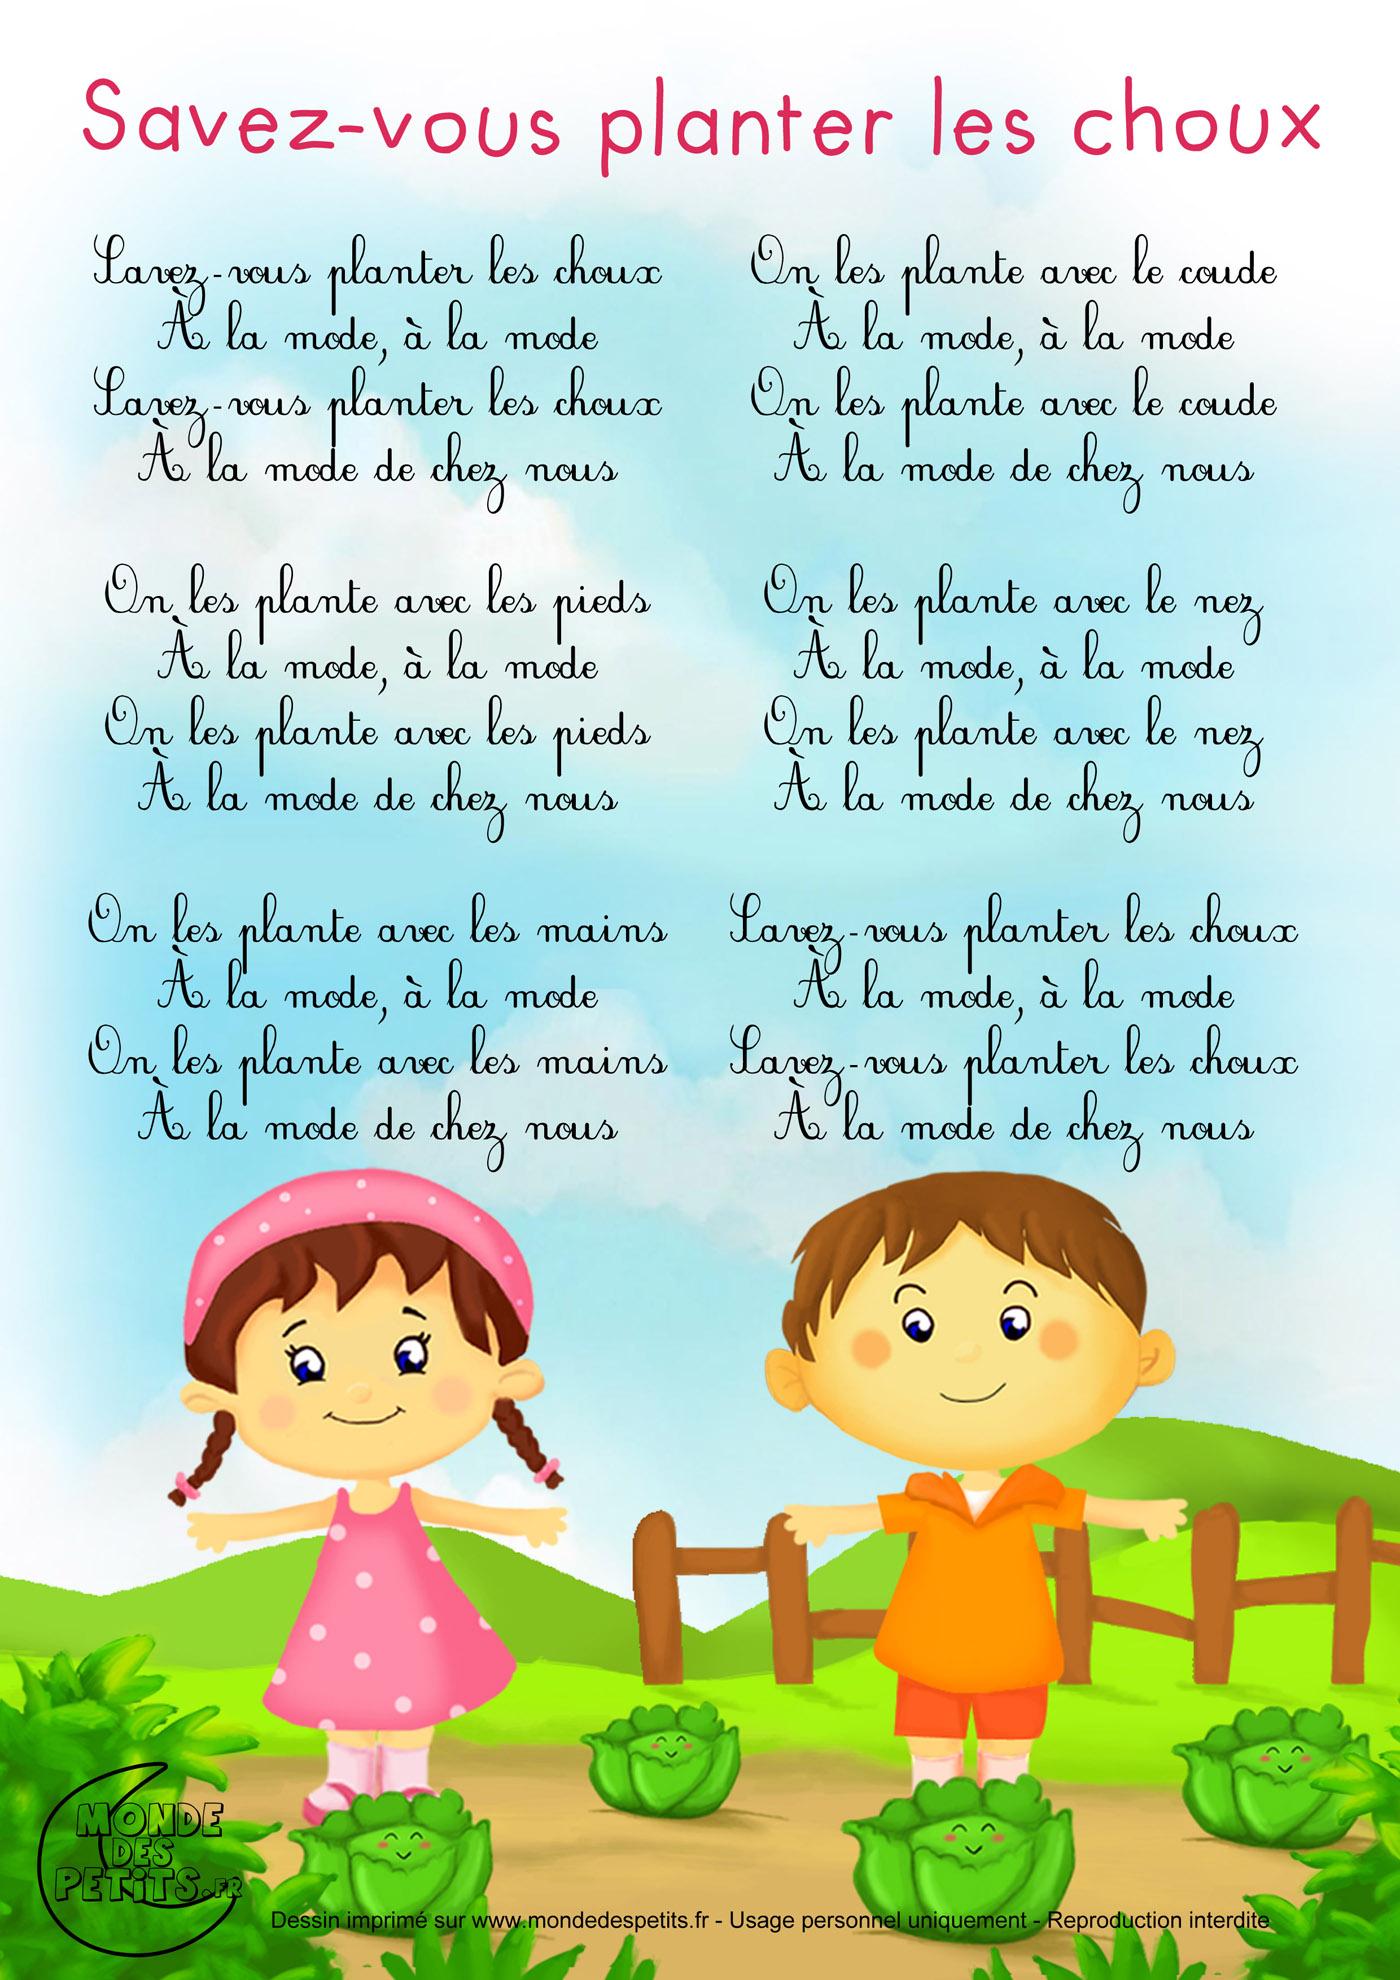 Французские детские песни. Savez vous Planter les choux текст. Savez vous Planter les choux перевод. Песенкамна французском. Песенка на французском языке.